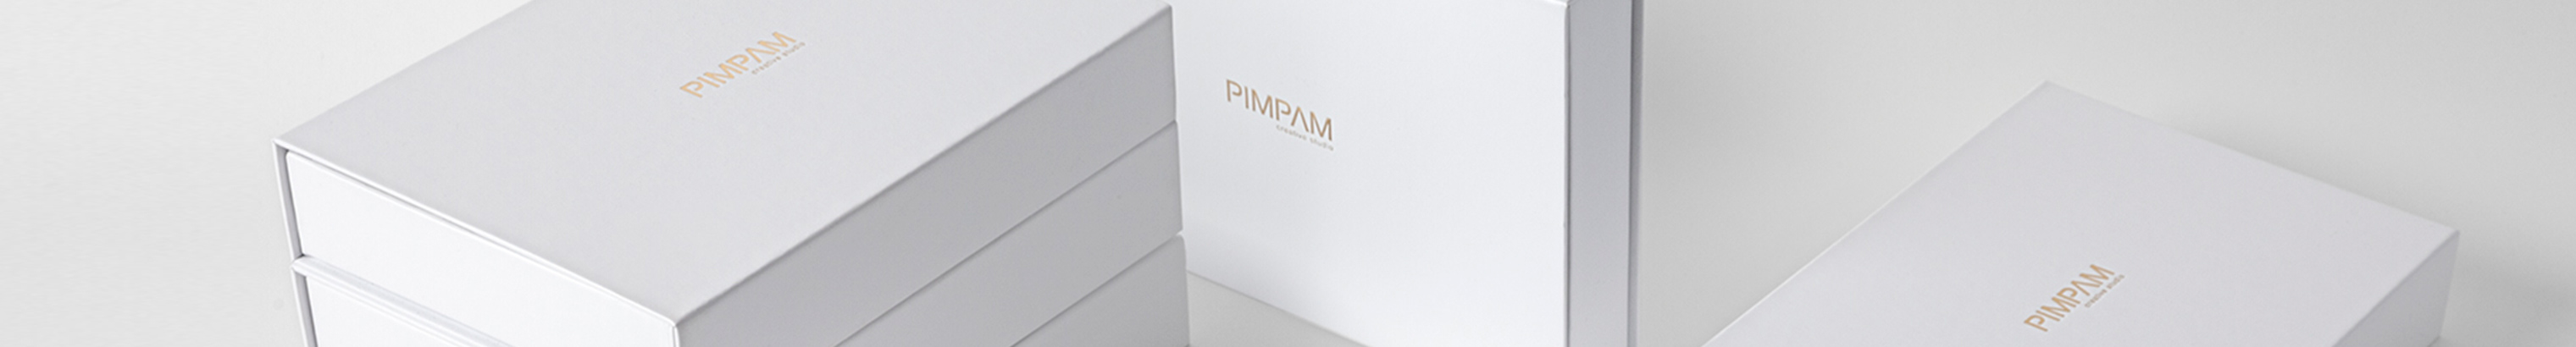 PimPam Studio's profile banner